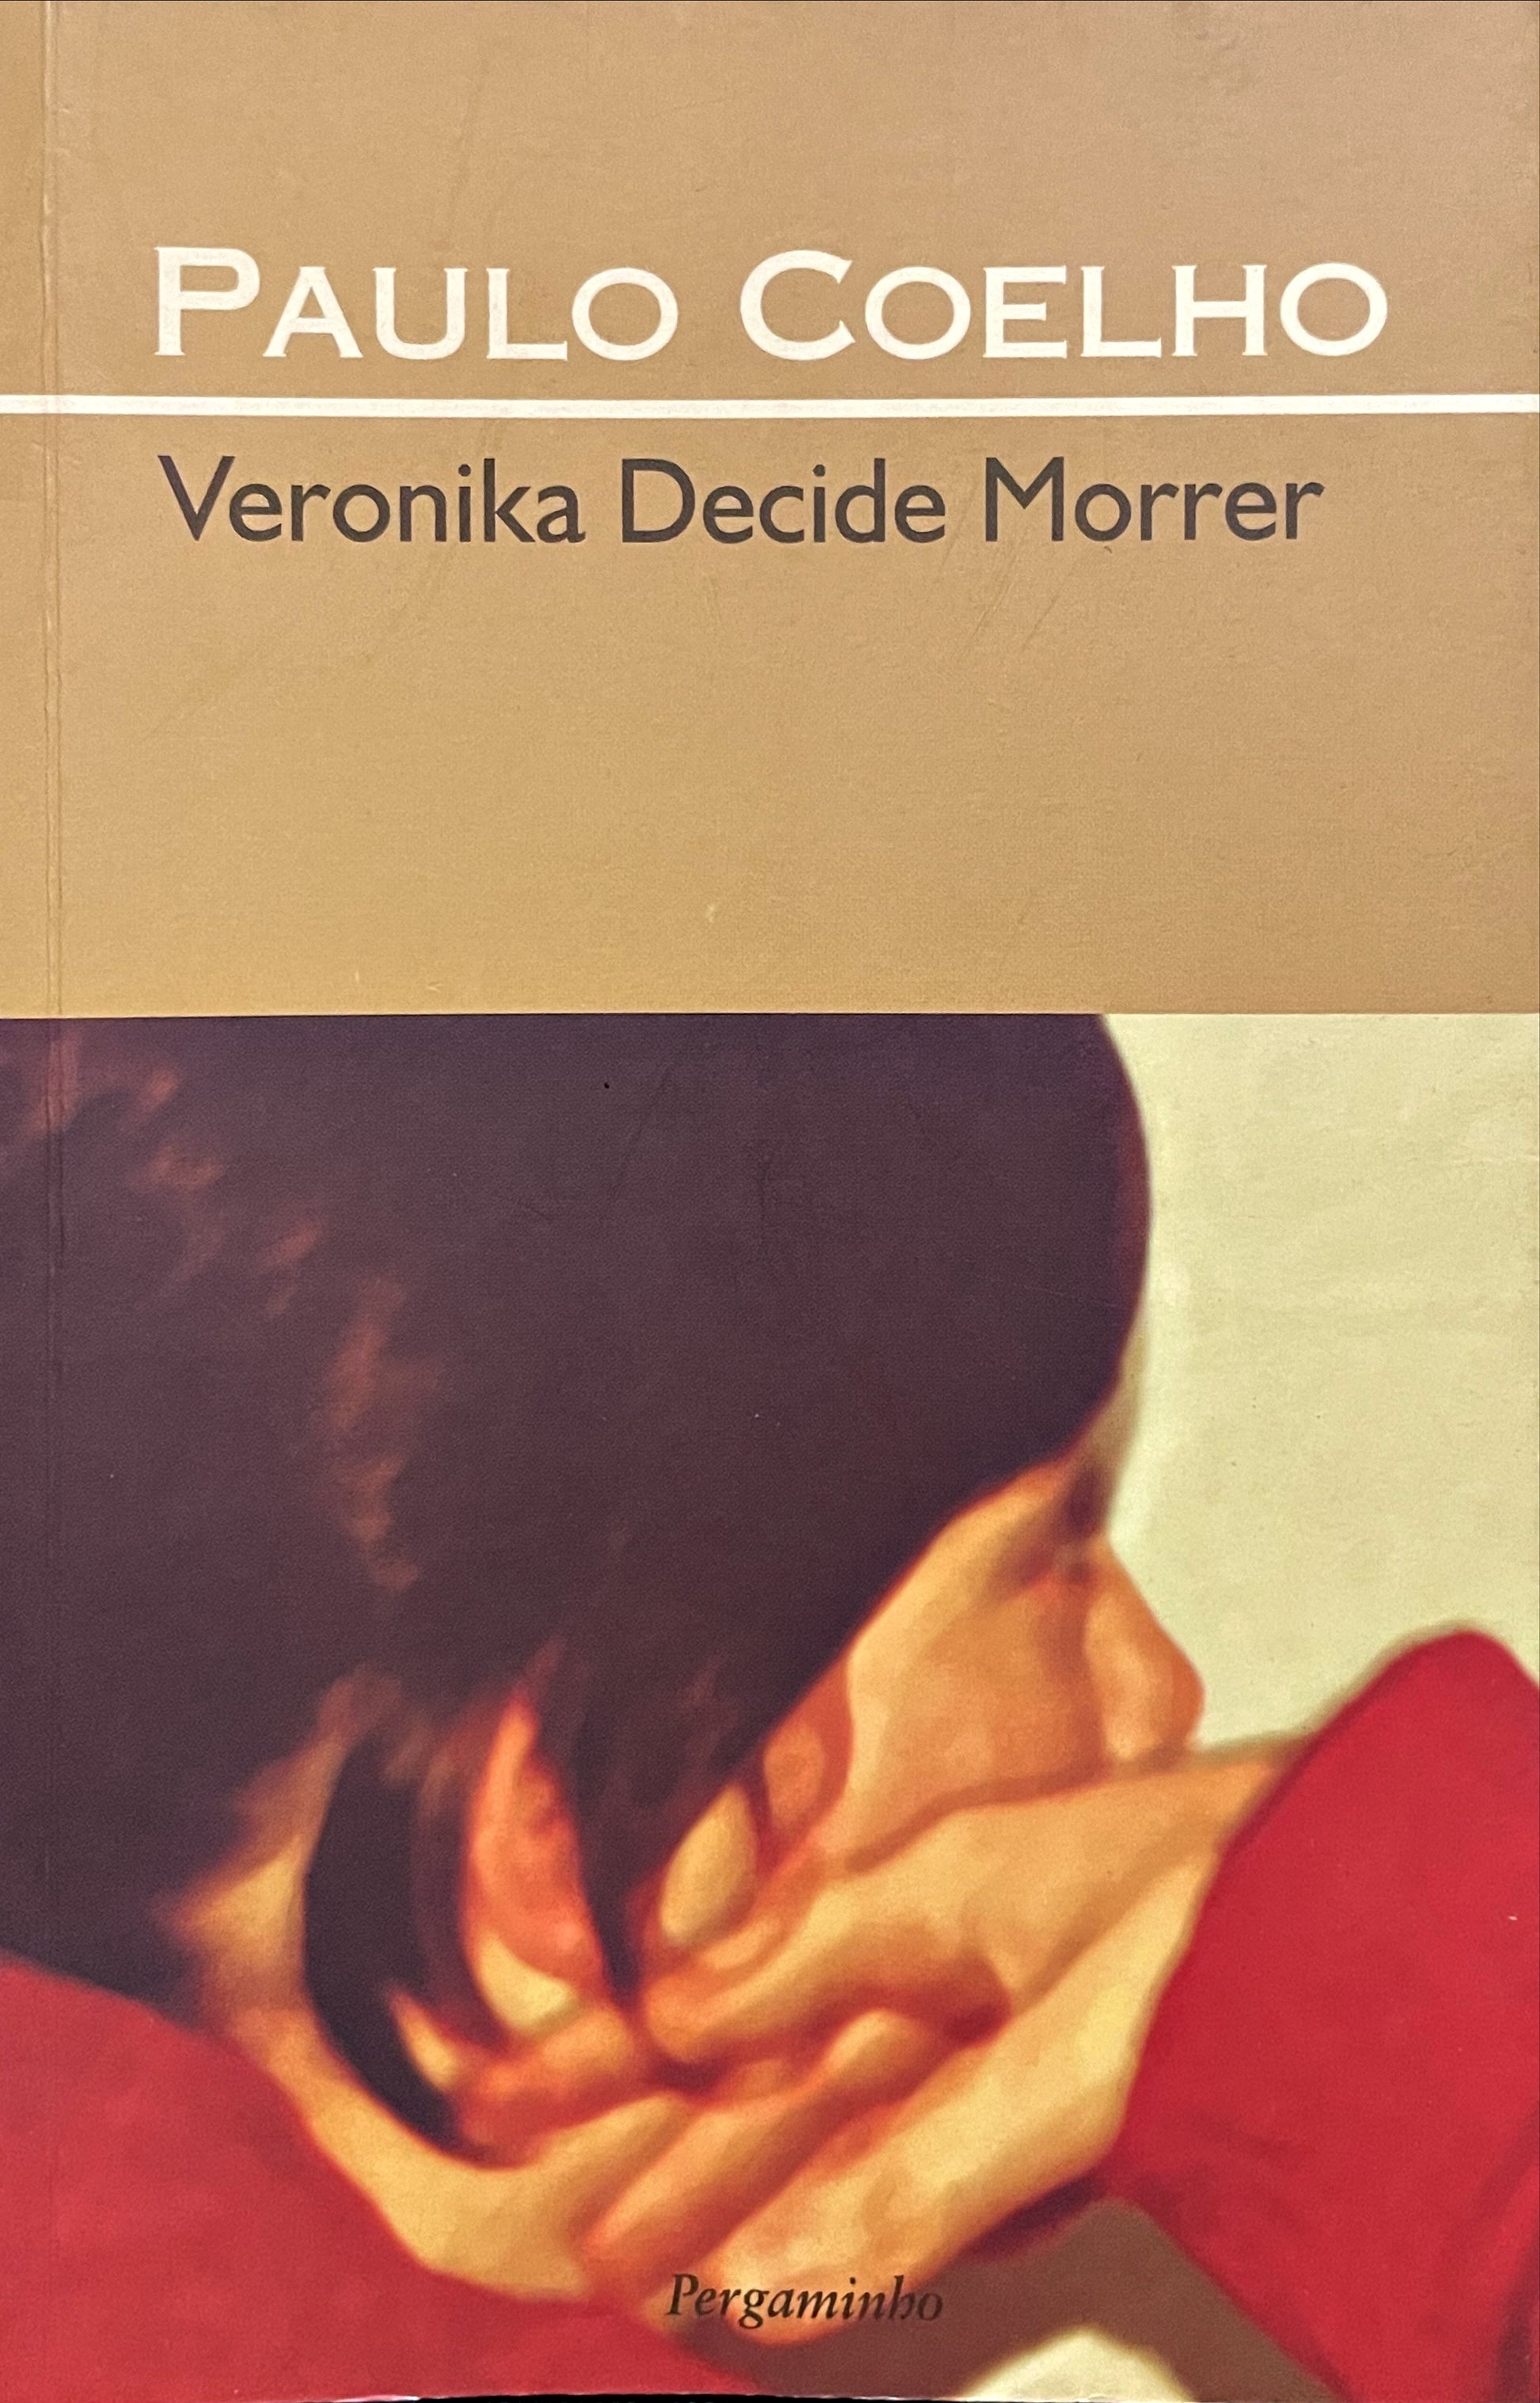 LIVRO Veronika Decide Morrer de Paulo Coelho - USADO